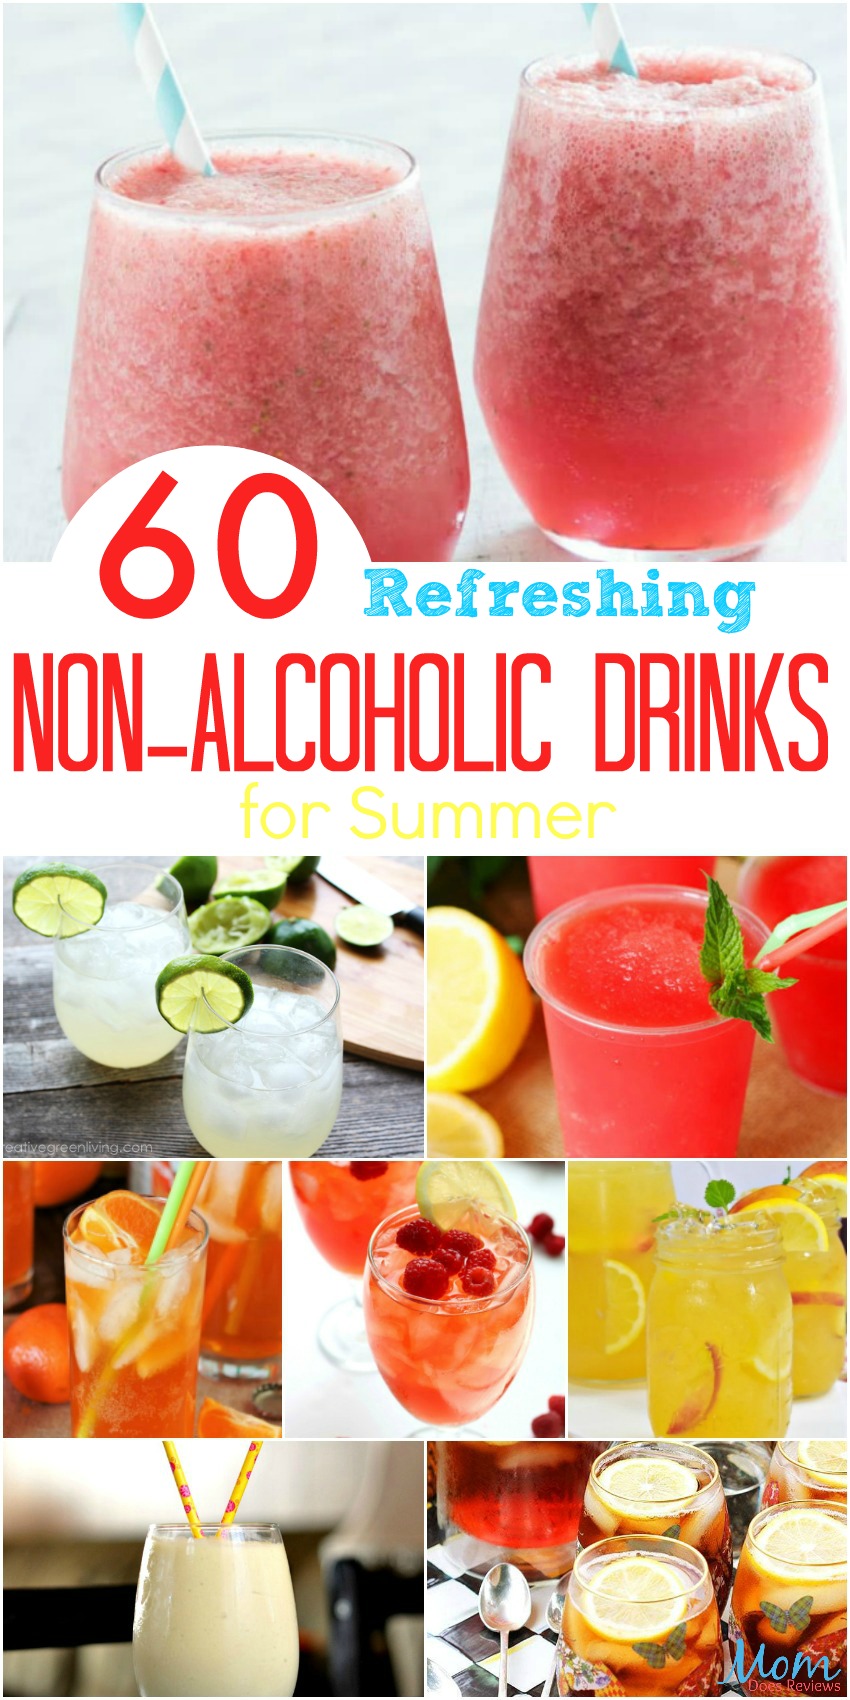 60 Refreshing Non-Alcoholic Drinks for Summer #drinks #summer #frozendrinks #virgindrinks